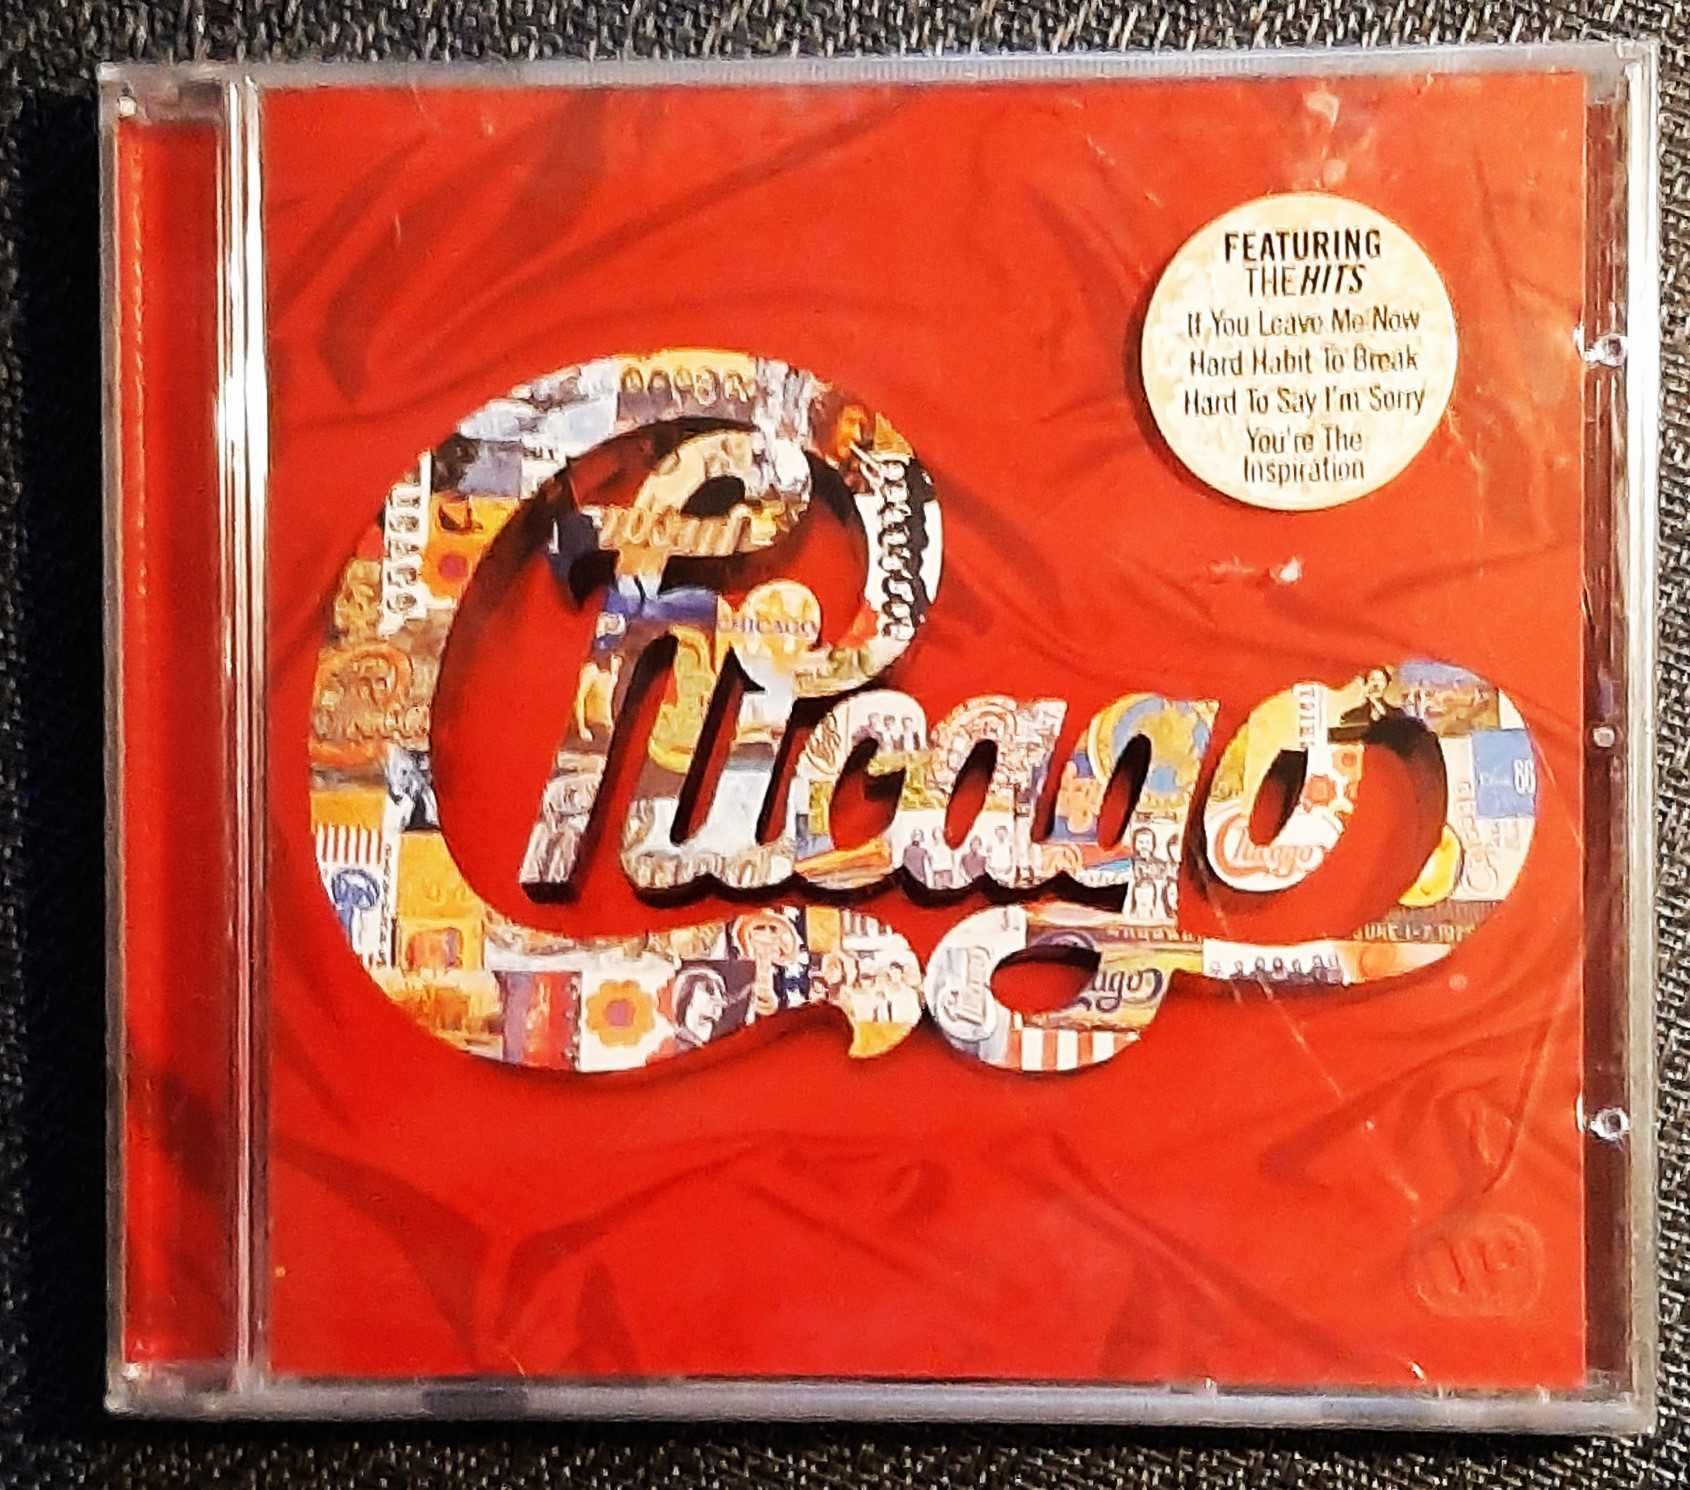 Polecam CD Kultowego Zespołu CHICAGO - Album The Heart Of Chicago